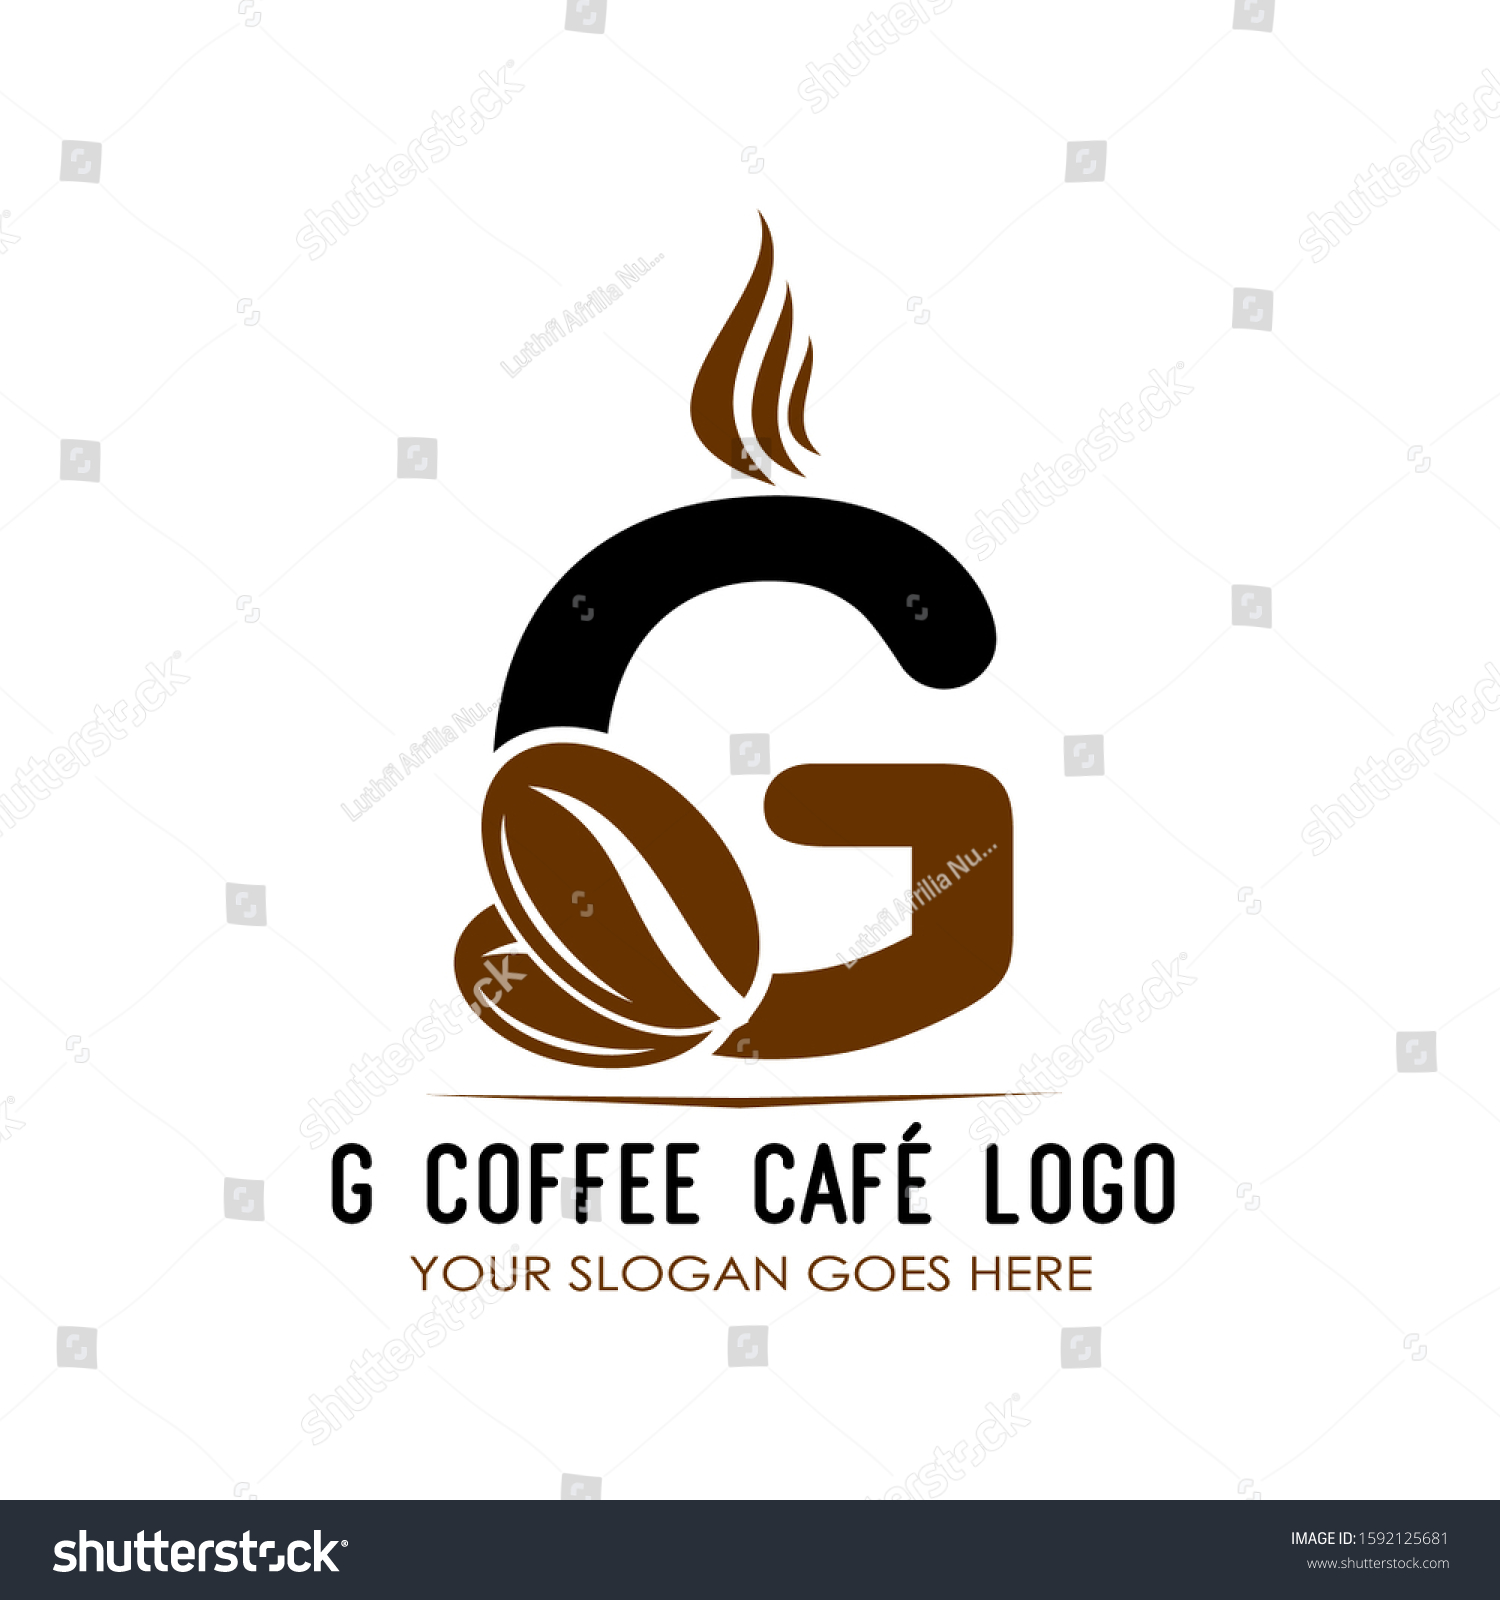 G coffee